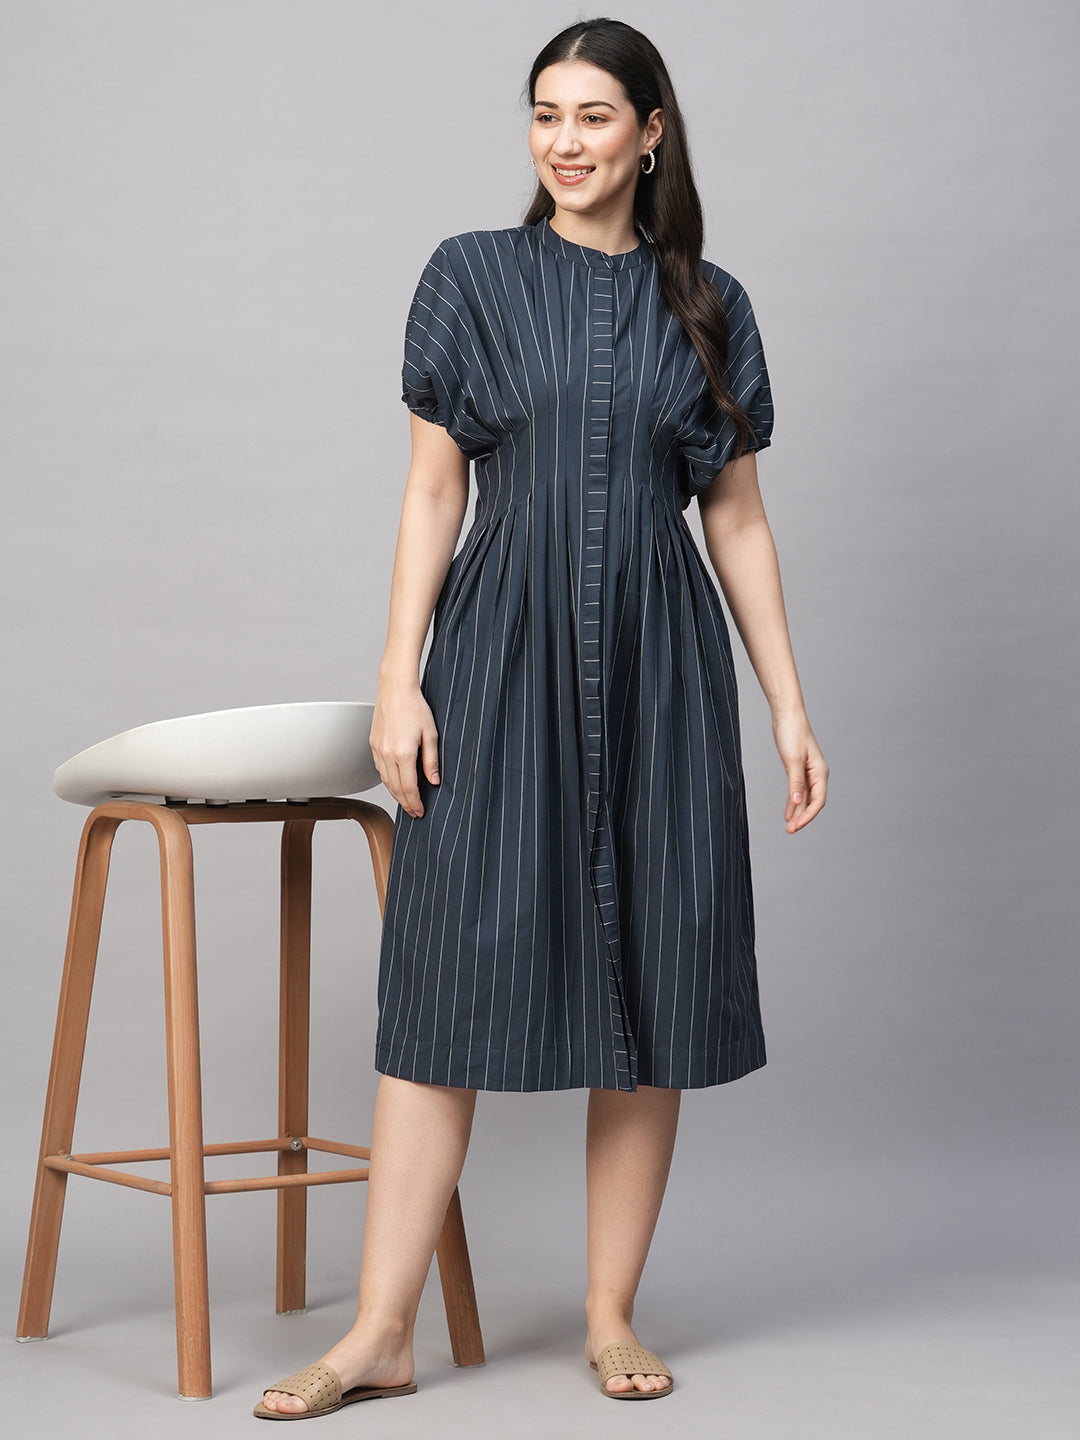 Buy Midi Dresses Online - Women & Girls | Cotton Dresses Online